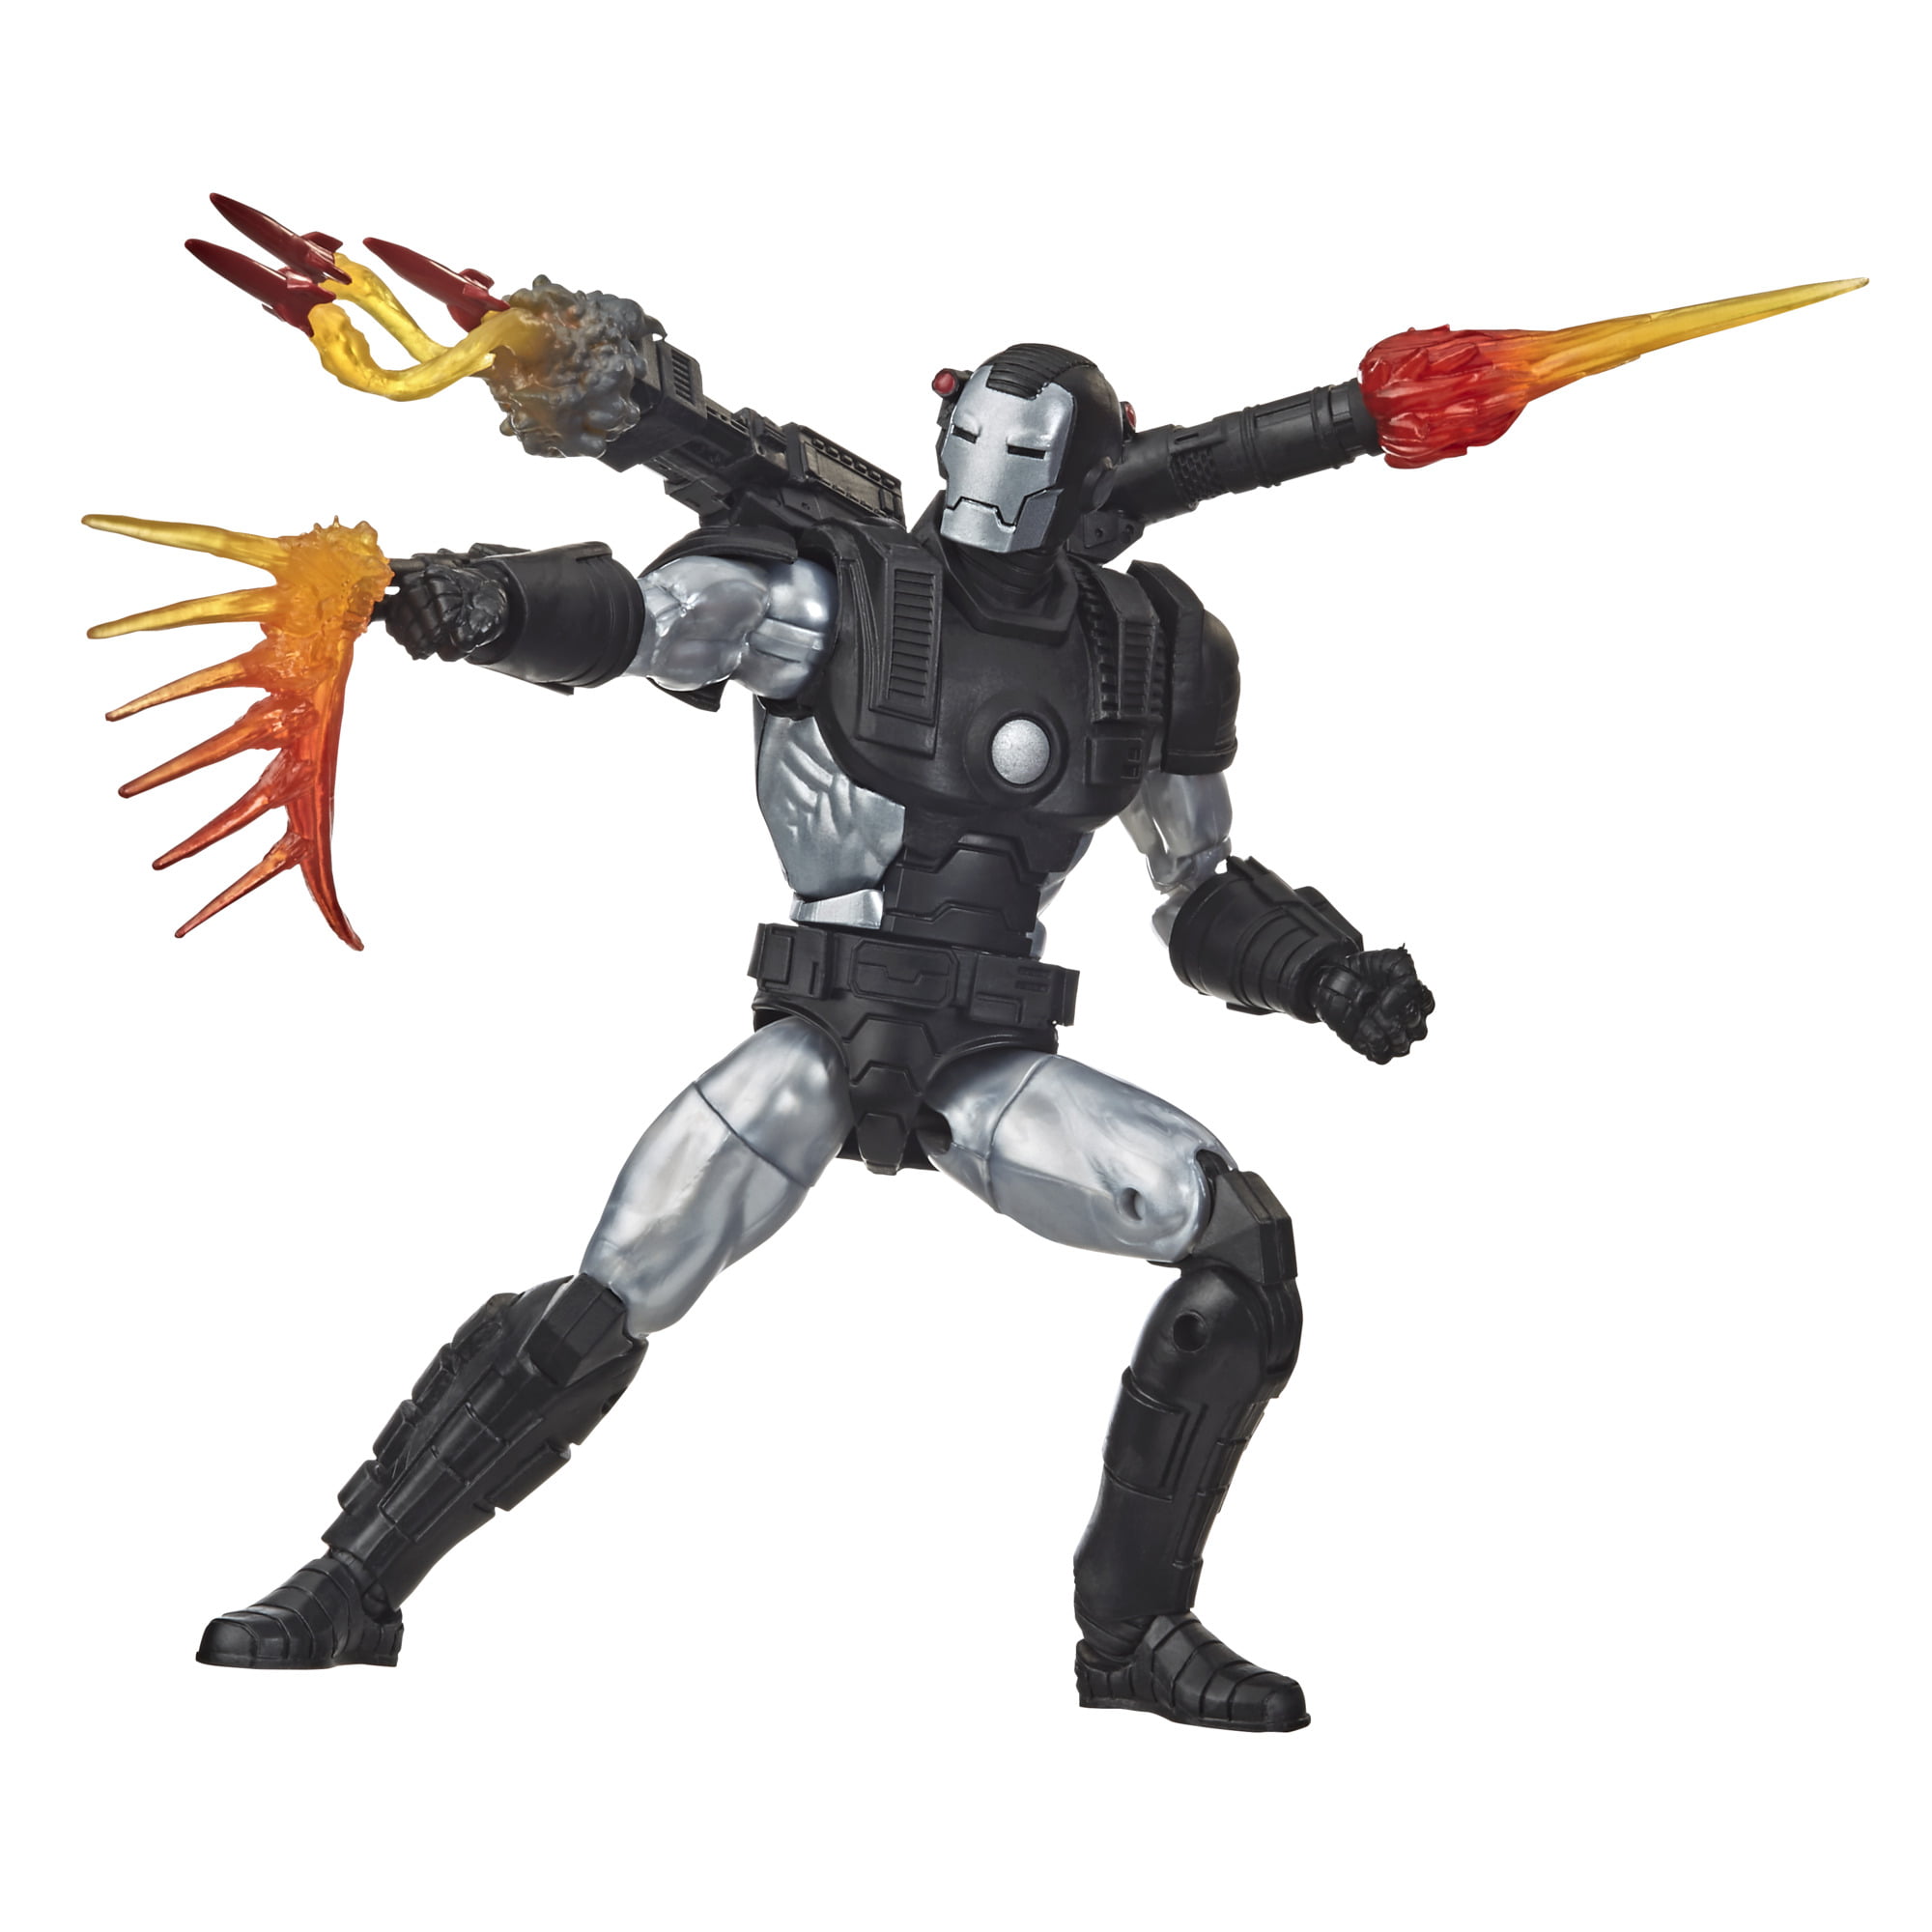 Hasbro Marvel Legends Series Deluxe War Machine 6/" Figure for sale online